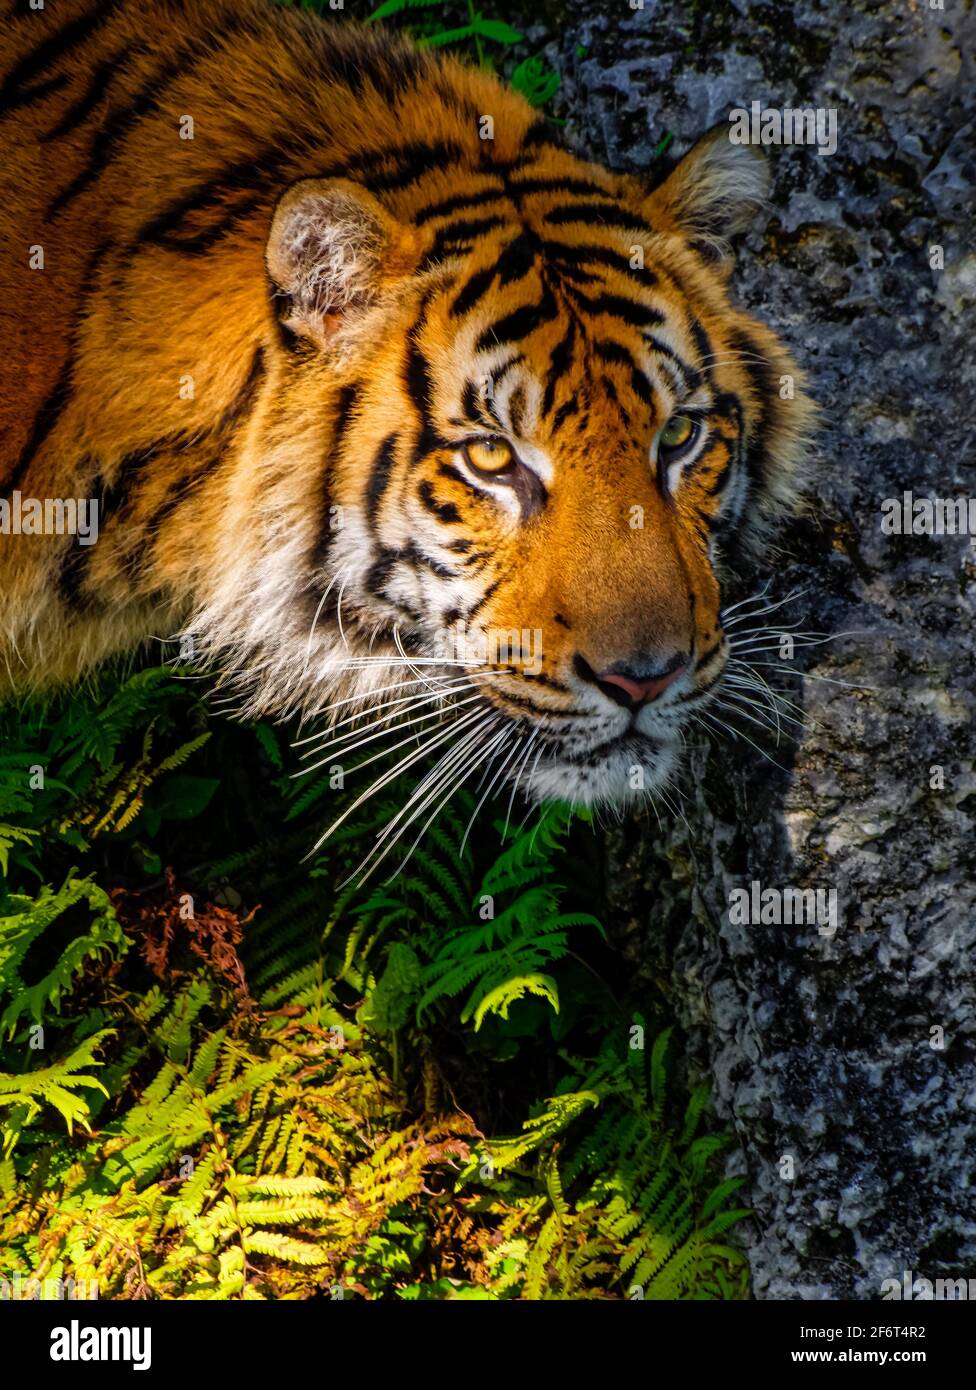 El tigre (Panthera tigris) es la especie de gato más grande, más reconocible por su patrón de rayas verticales oscuras en piel rojiza-anaranjada con un Foto de stock